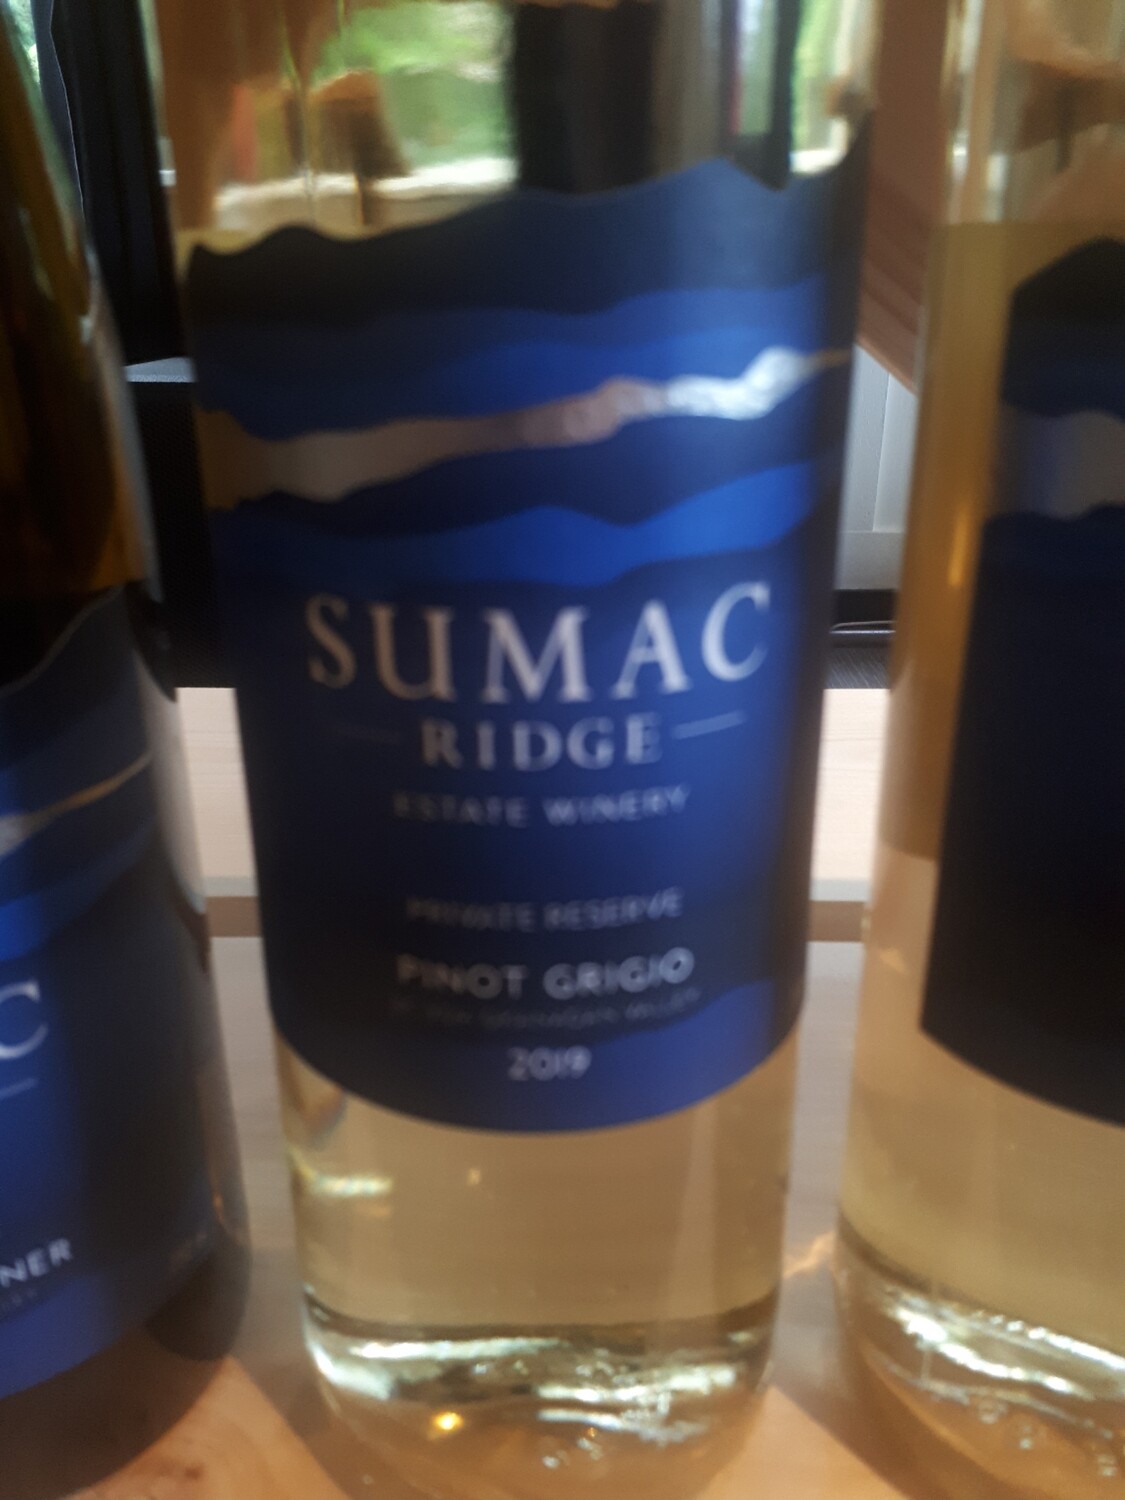 Sumac Ridge - Pinot Grigio (Okanagan)